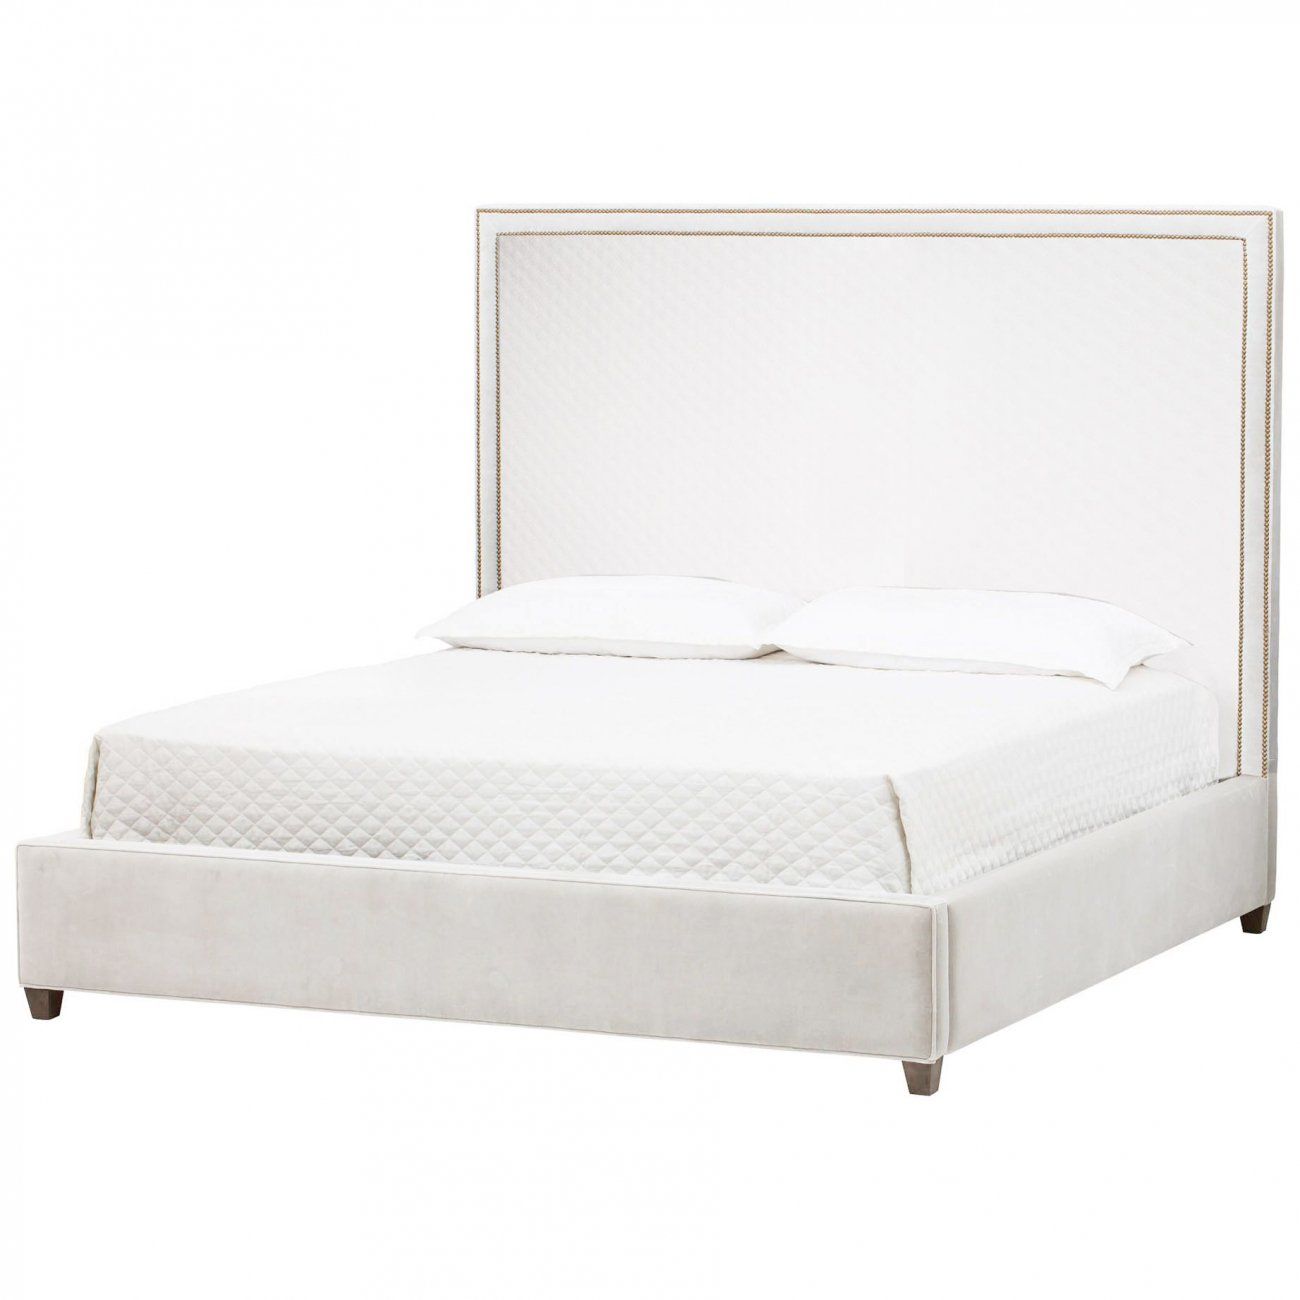 Double bed 160x200 white Dakota